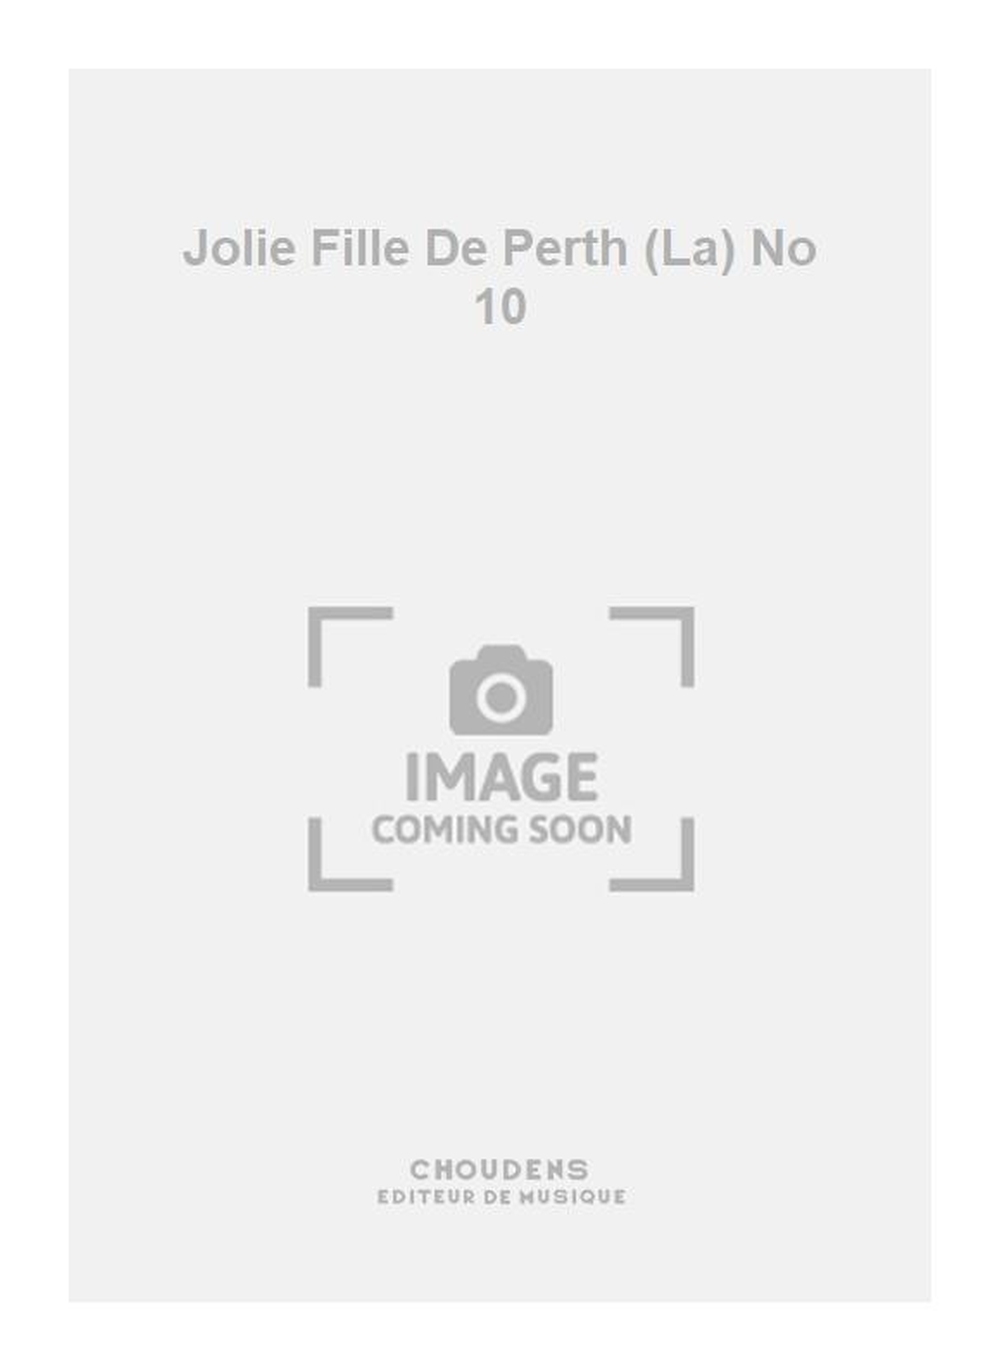 Georges Bizet: Jolie Fille De Perth (La) No 10